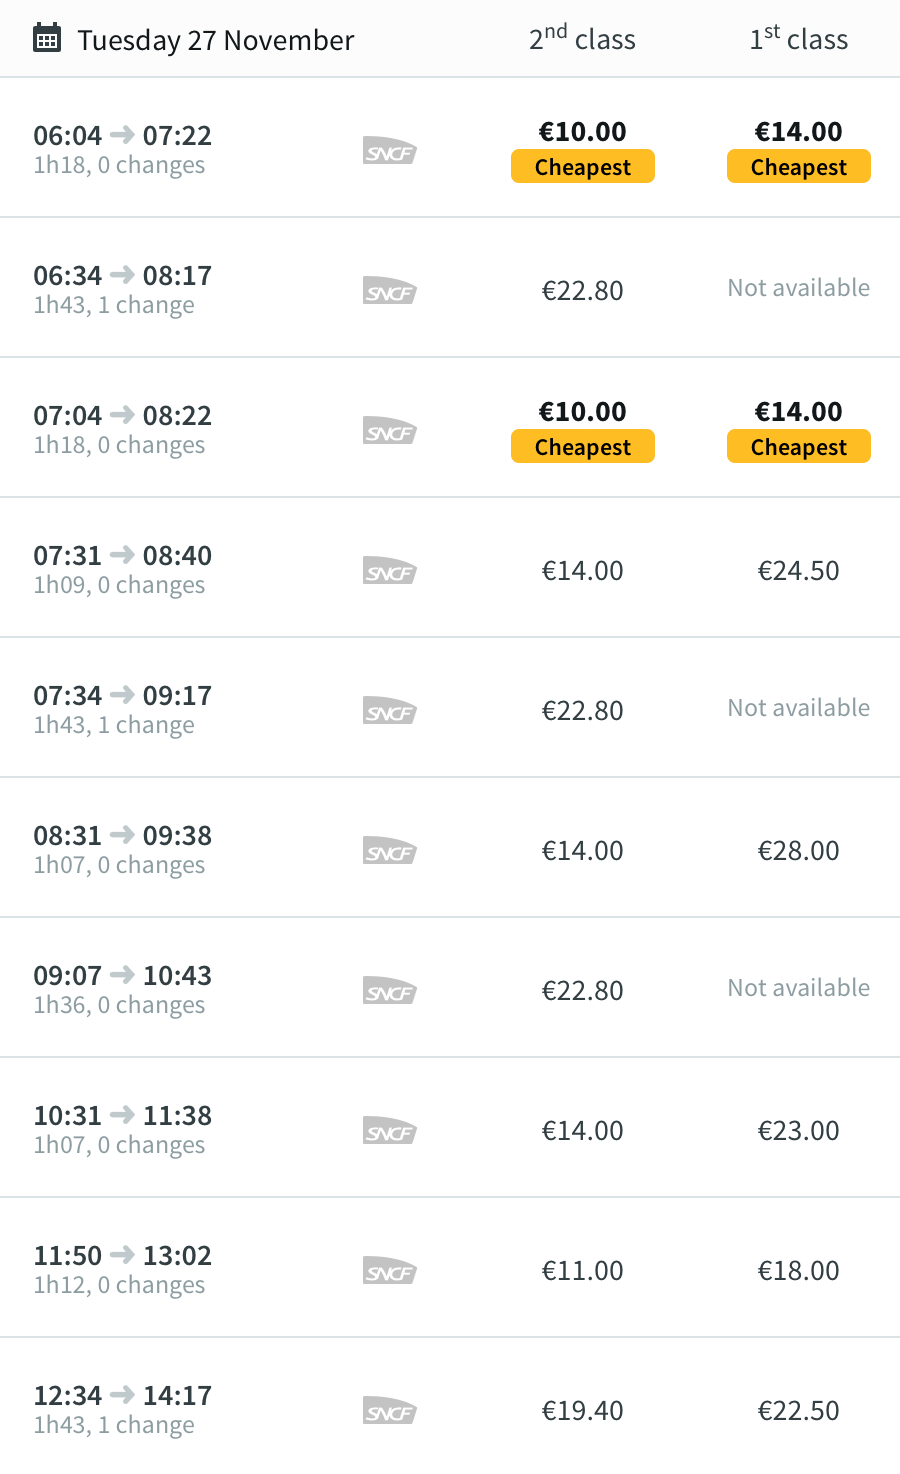 В течение одного дня цены могут отличаться в два раза. Например, государственная железнодорожная компания SNCF предлагает билет на 7 утра за 10 €, а на 9 утра — уже за 22,80 €